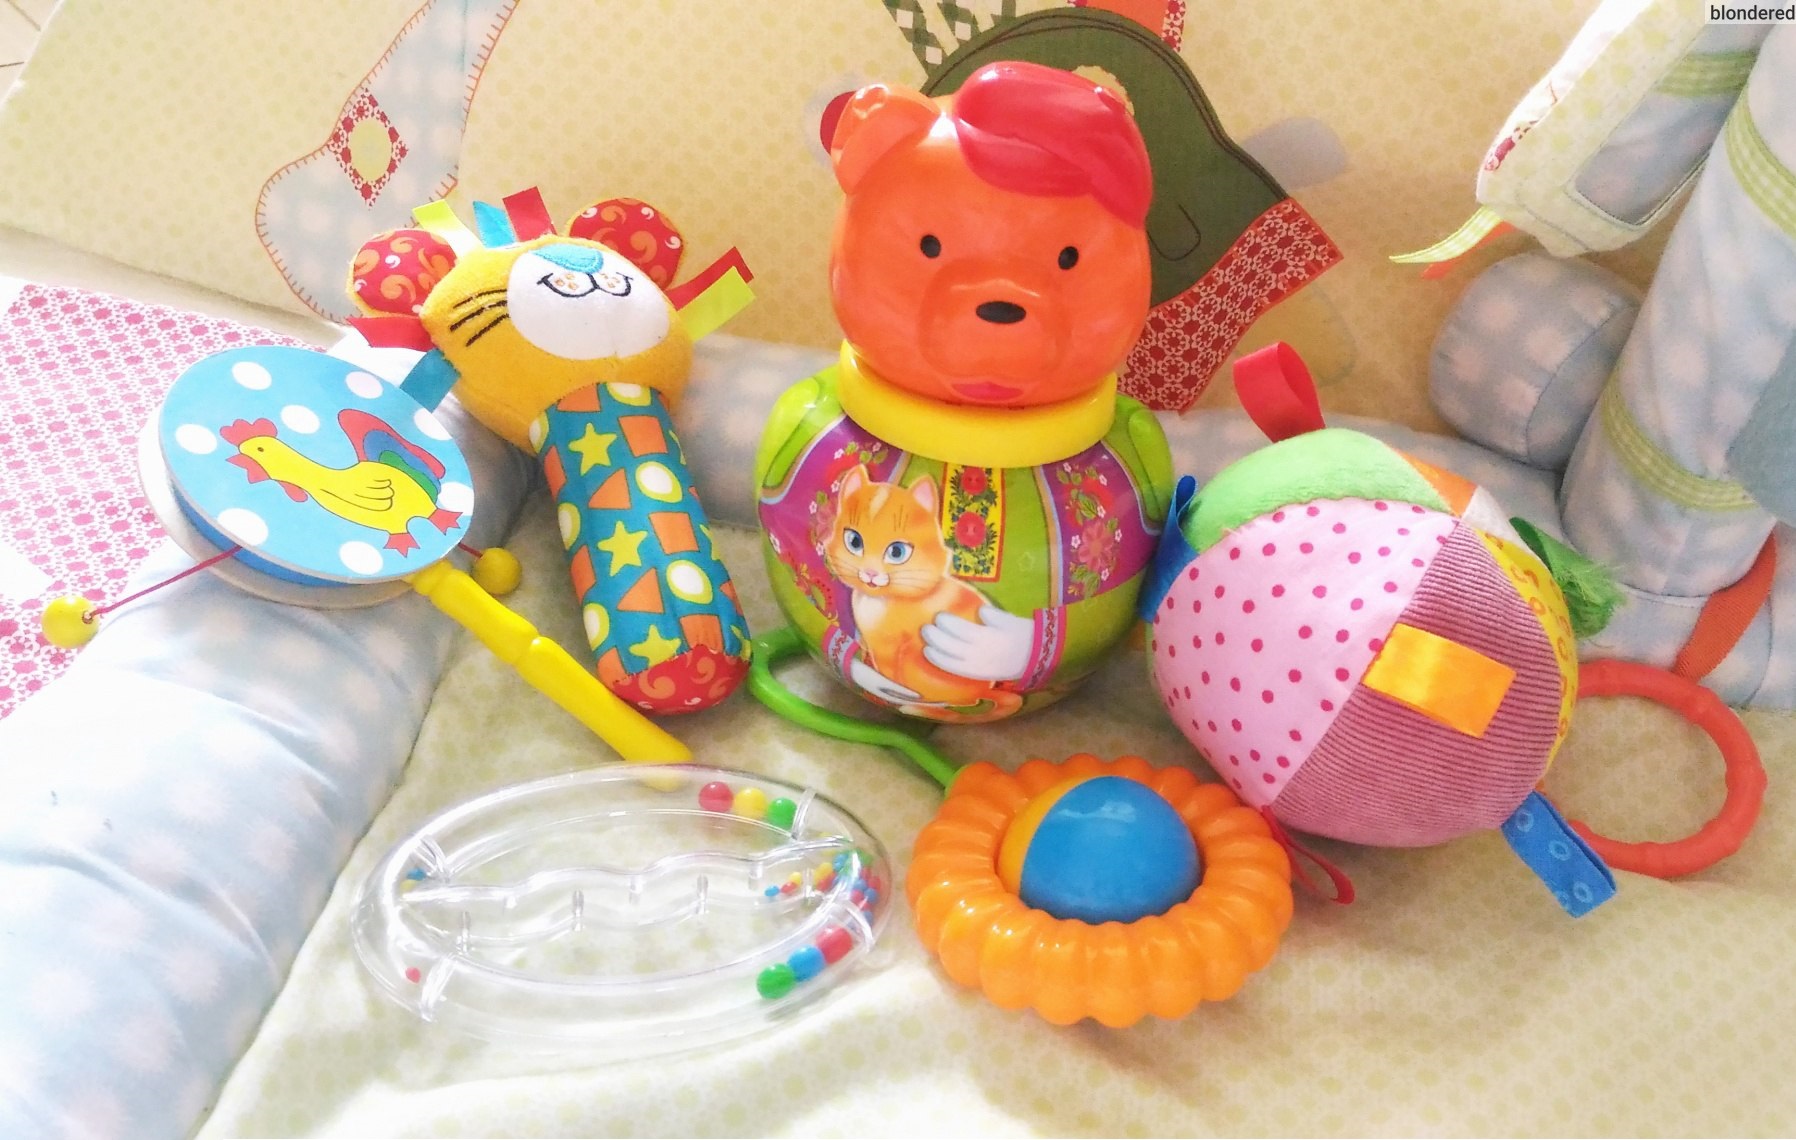 Погремушки - первые игрушки малыша. Пусть они будут разными на ощупь и звук, но яркими и качественными. Фото: Фейсбук